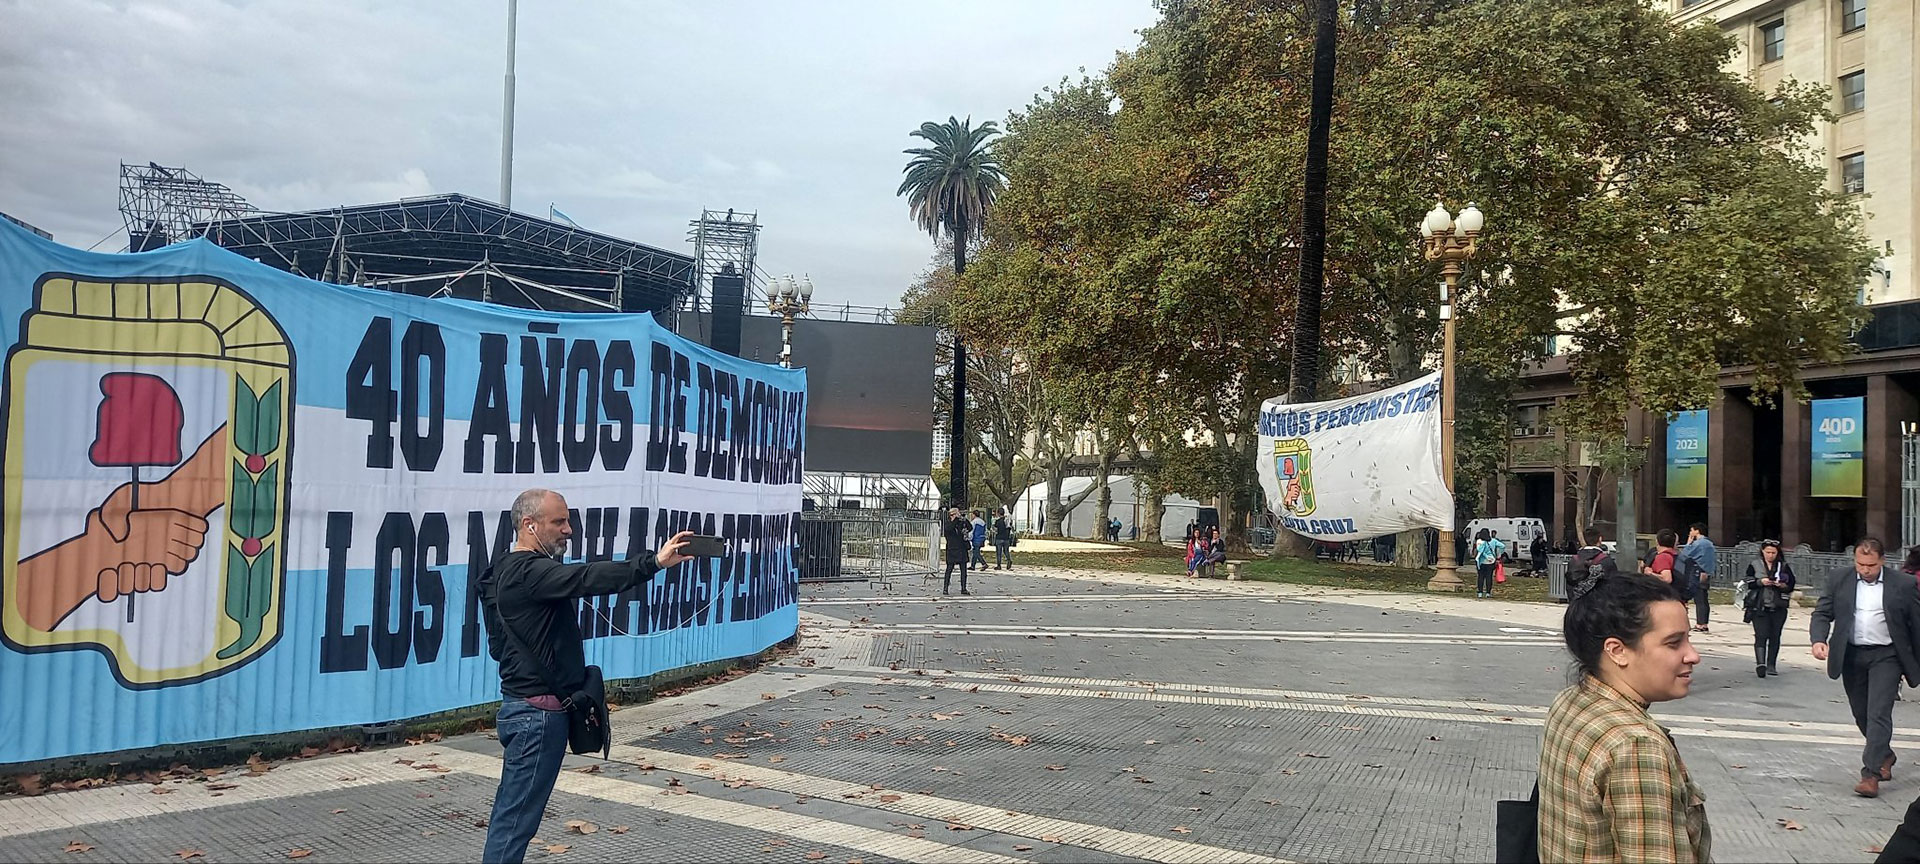 Desde ayer podían observarse en la Plaza de Mayo sobre las rejas que rodean la Pirámide las primeras banderas para recibir a Cristina Kirchner en el acto previsto para esta tarde